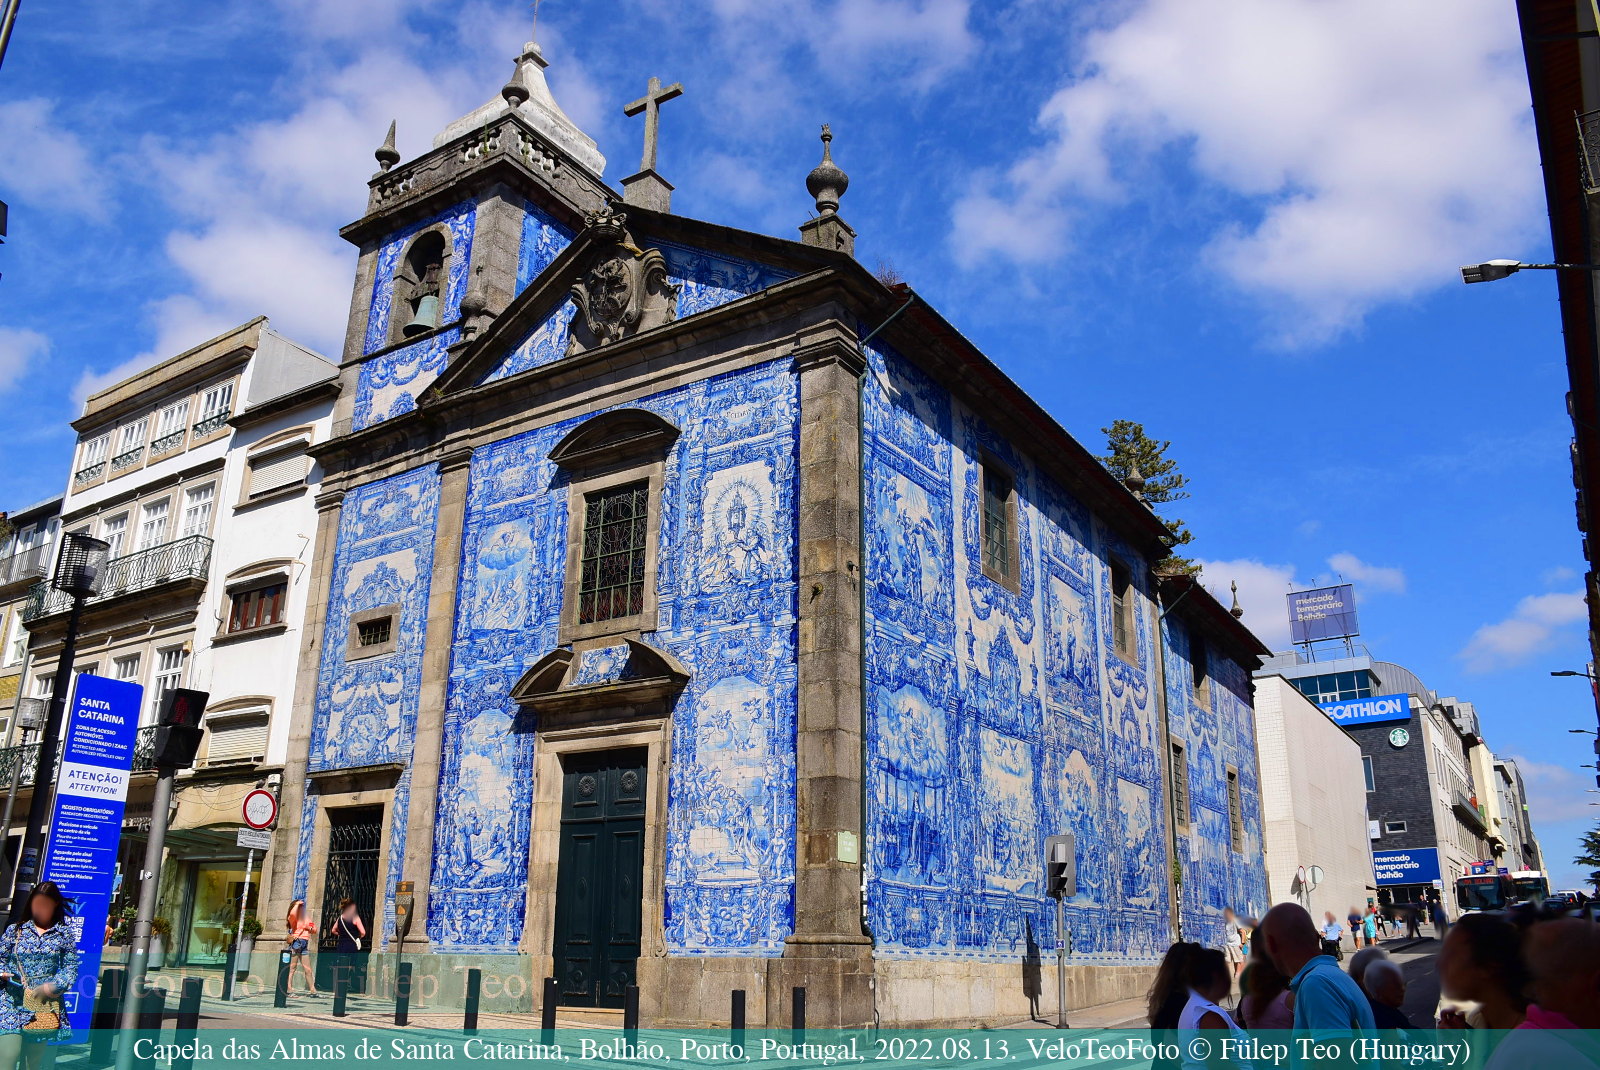 Lelkek kápolnája (Capela das Almas de Santa Catarina), az egyik legcsodálatosabb azulejo épület.